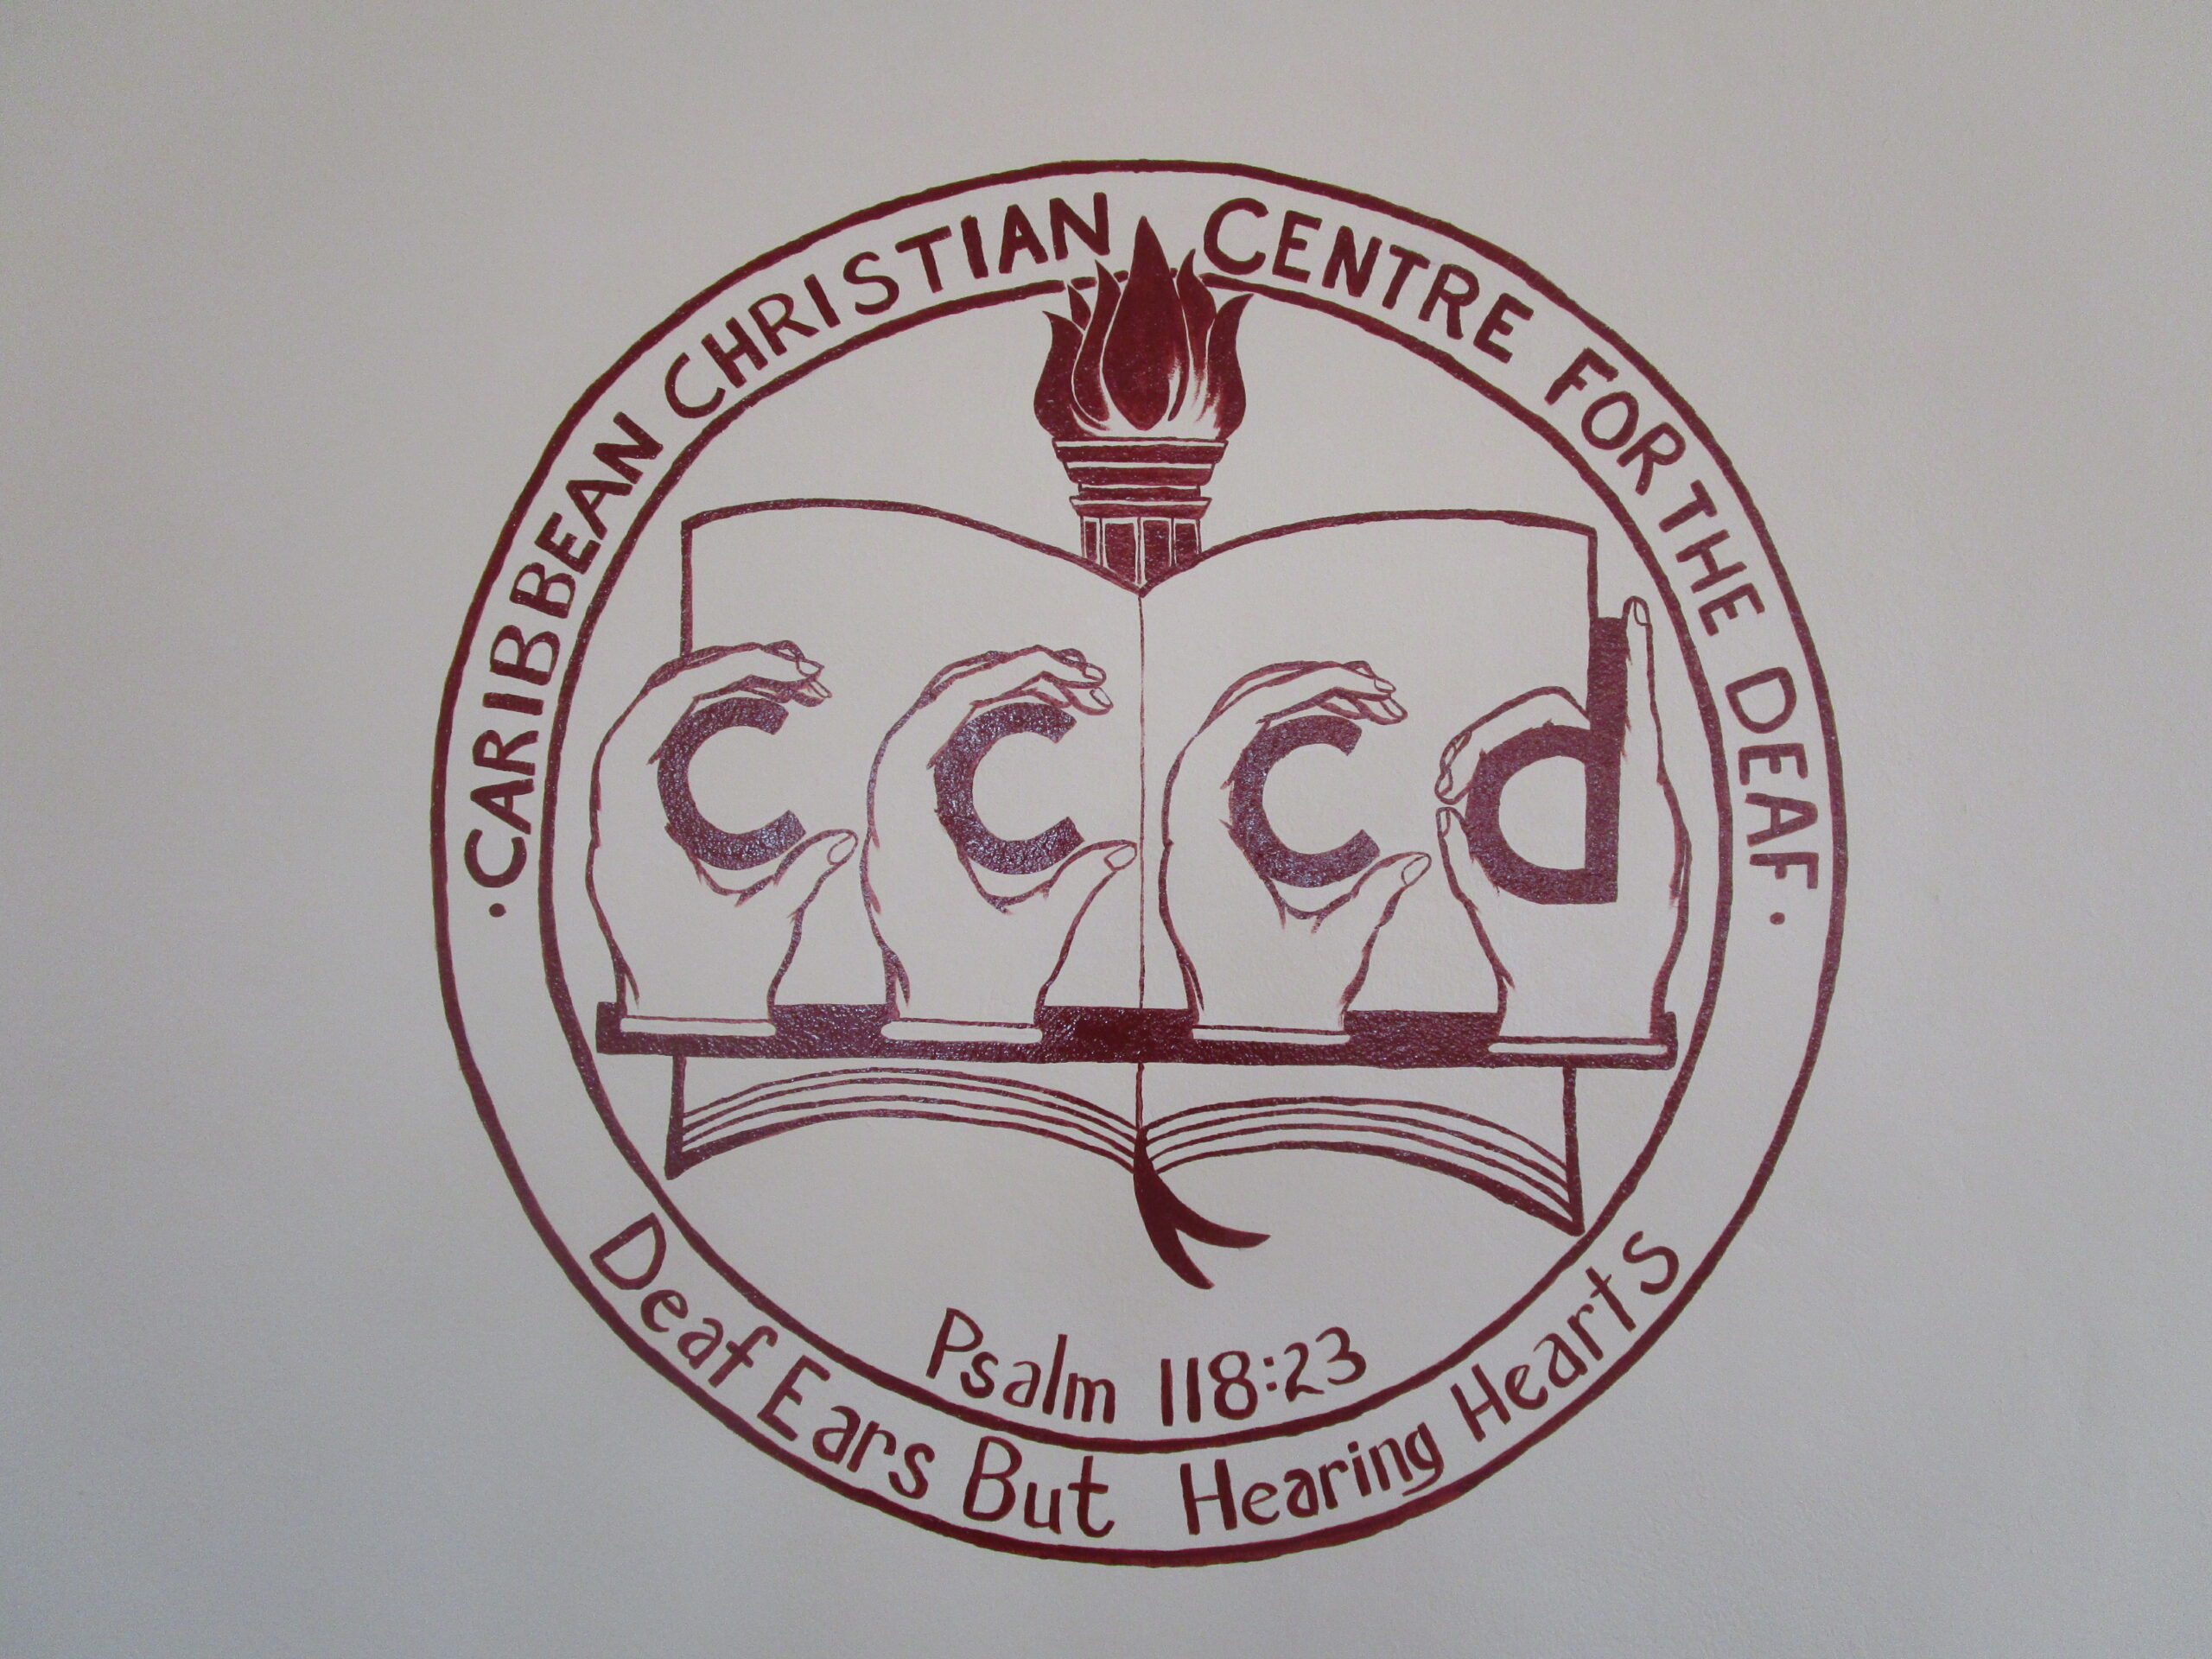 CCCD Logo Repainted